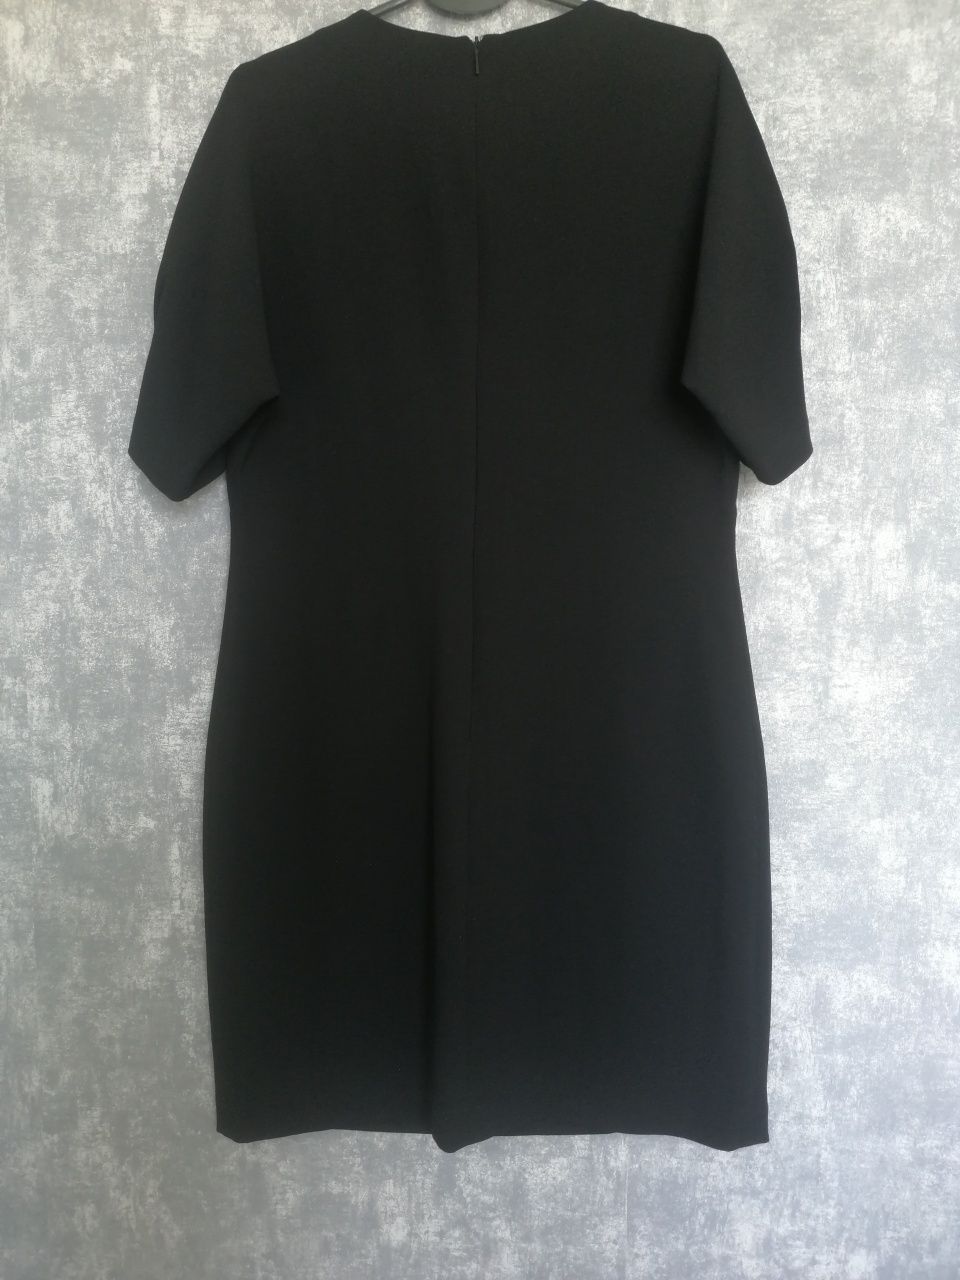 MNG Suit sukienka czarna, r. L, 40, M, 38